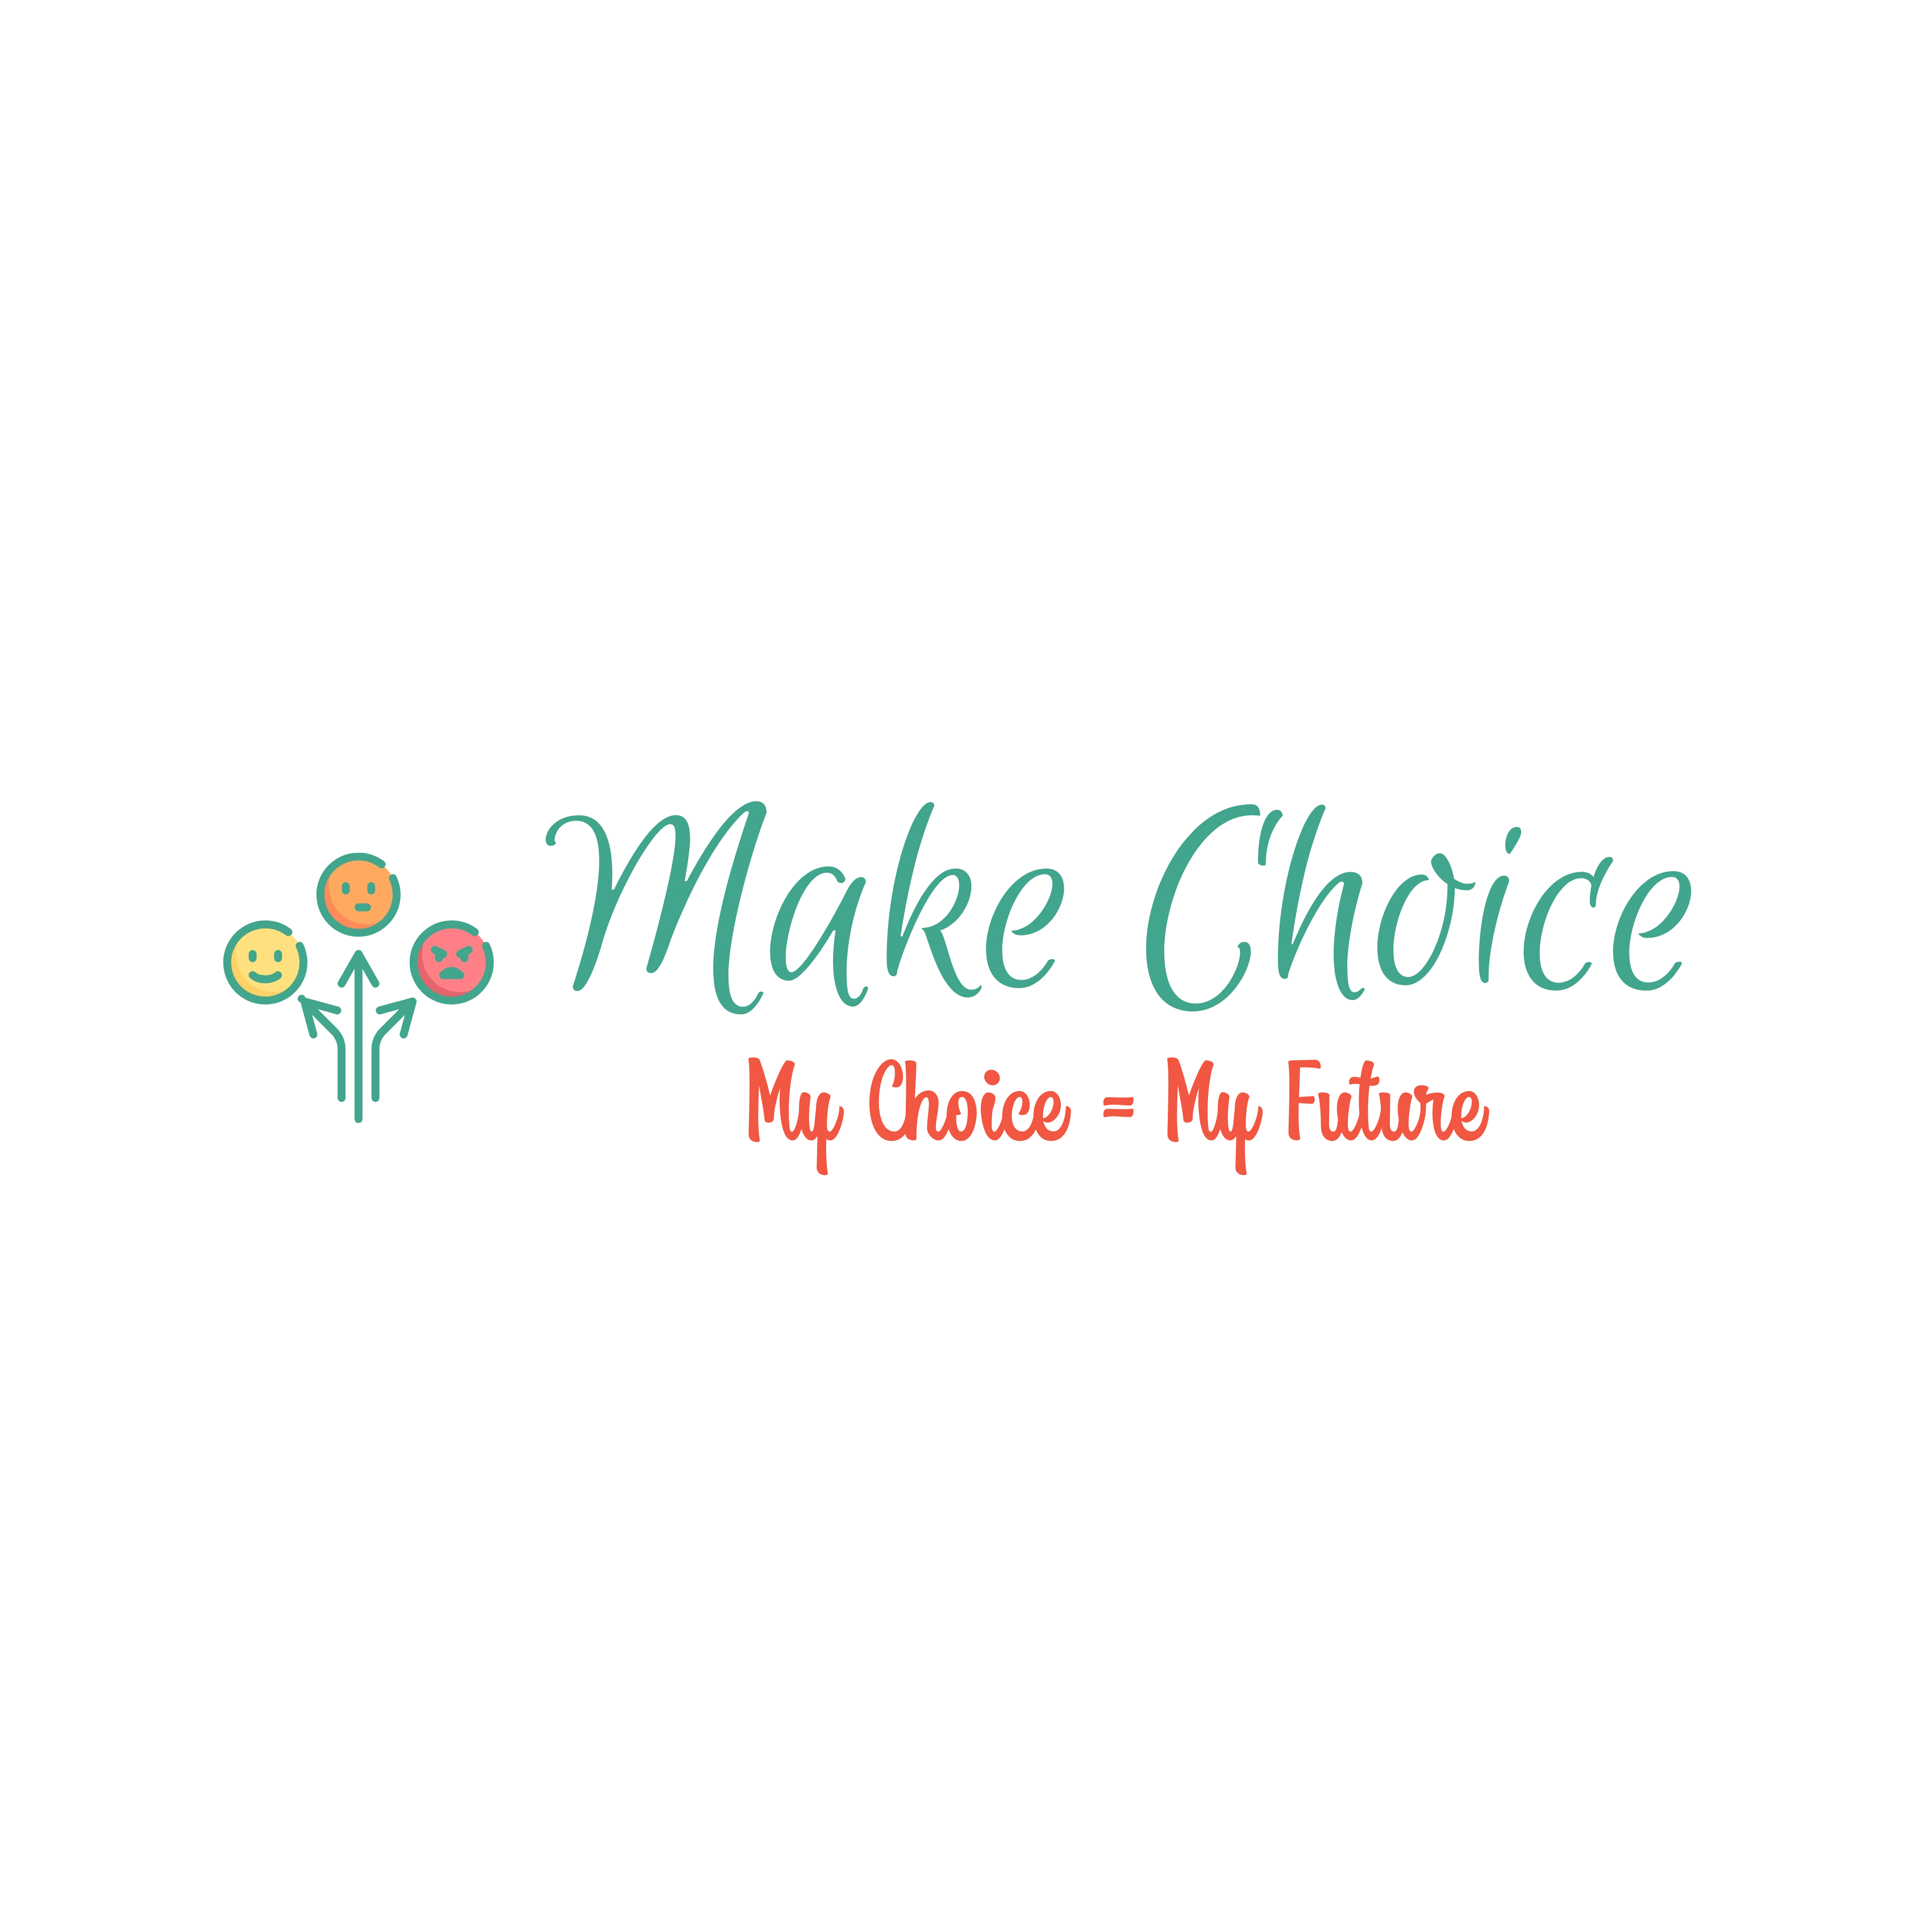 Makechoice logo